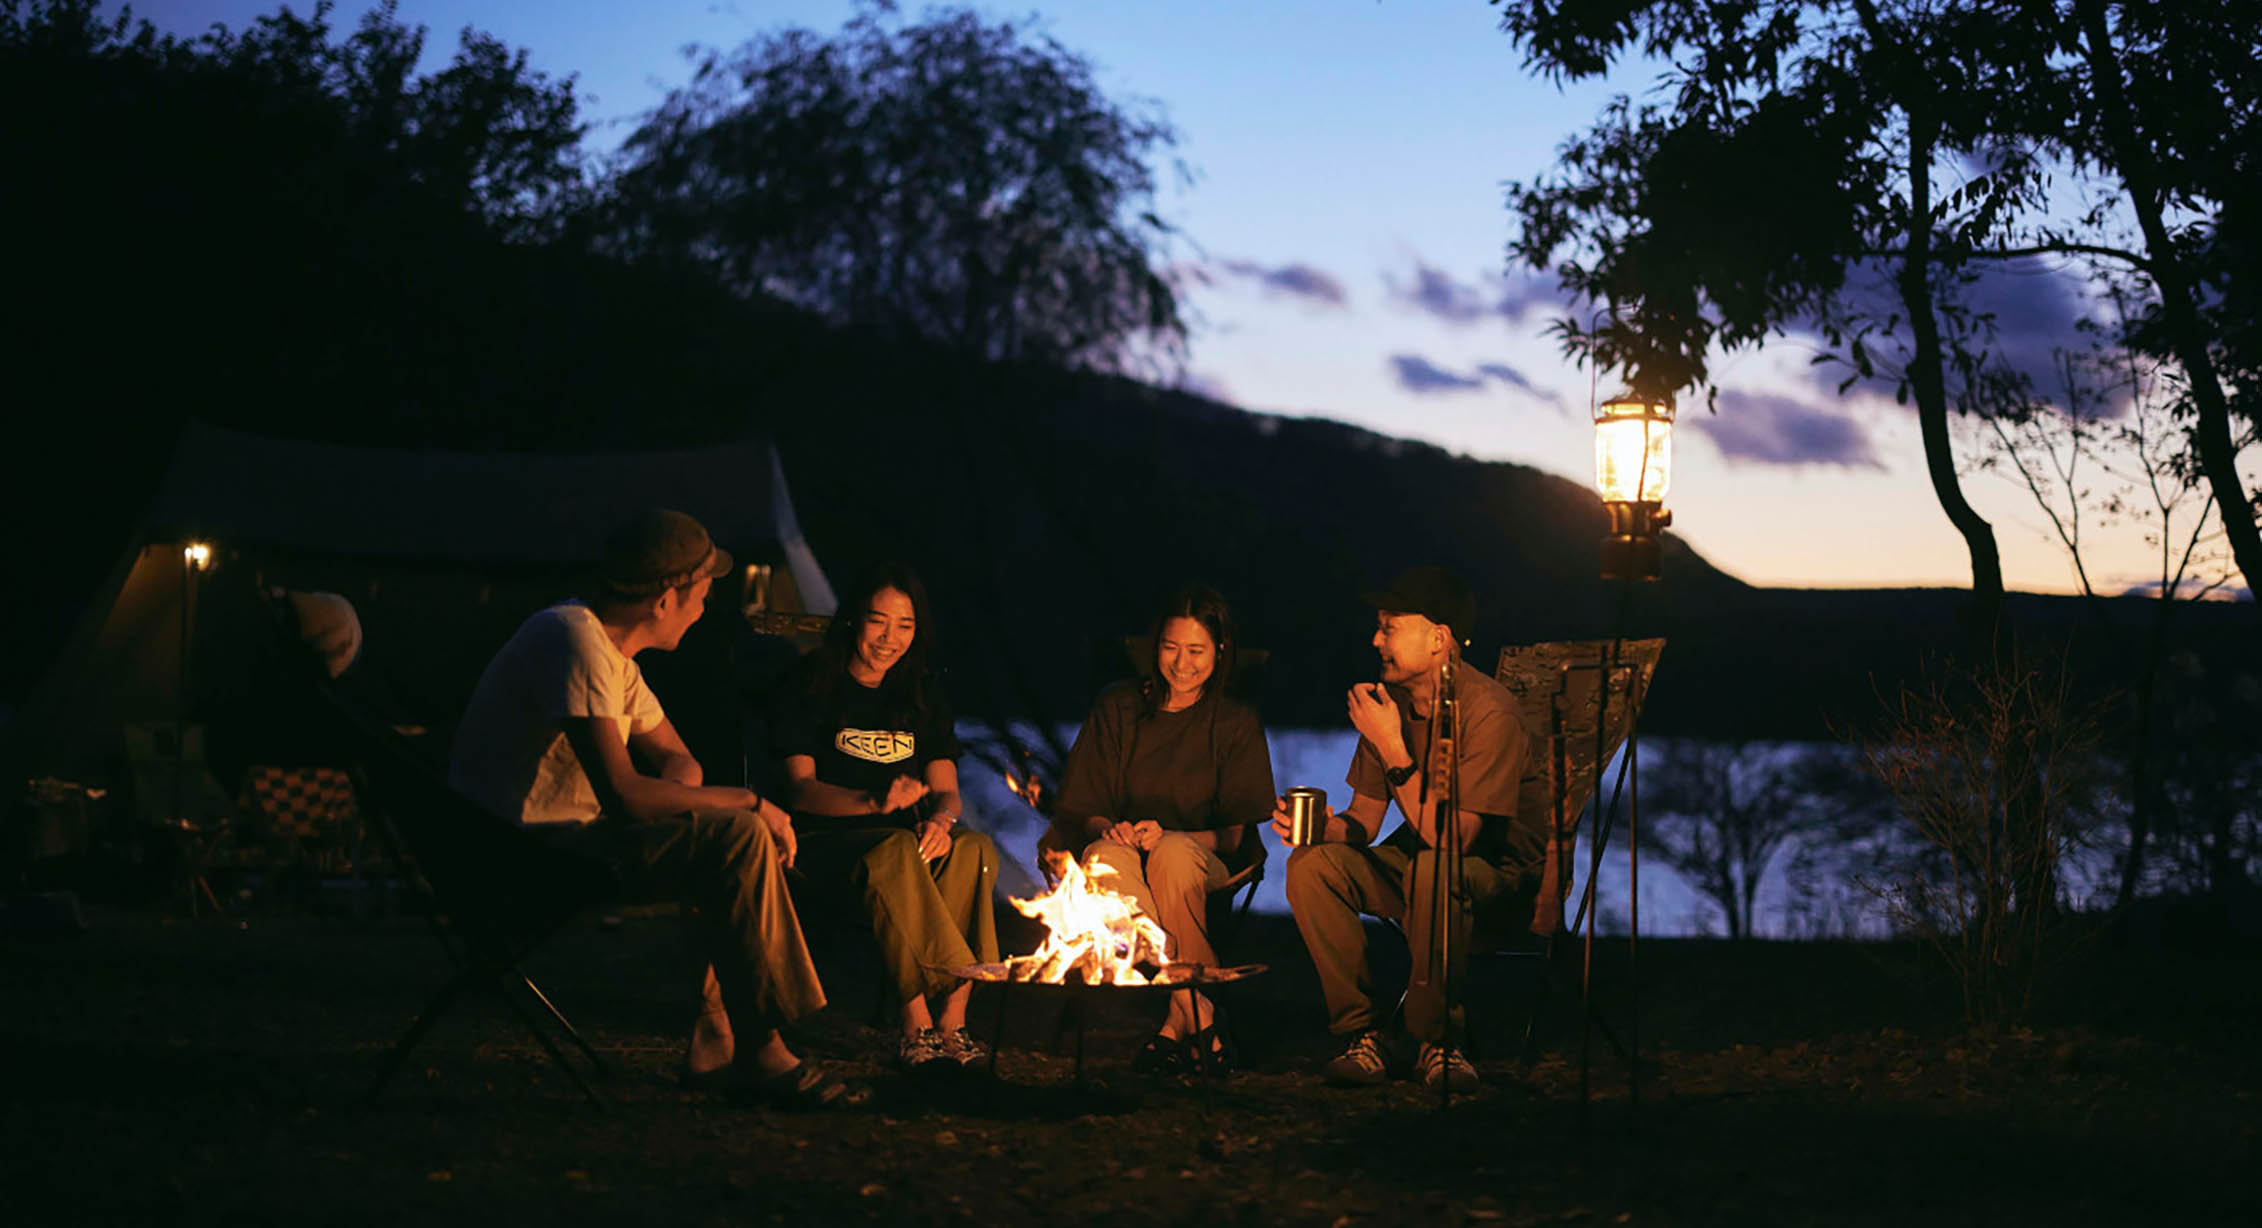 friends around a campfire